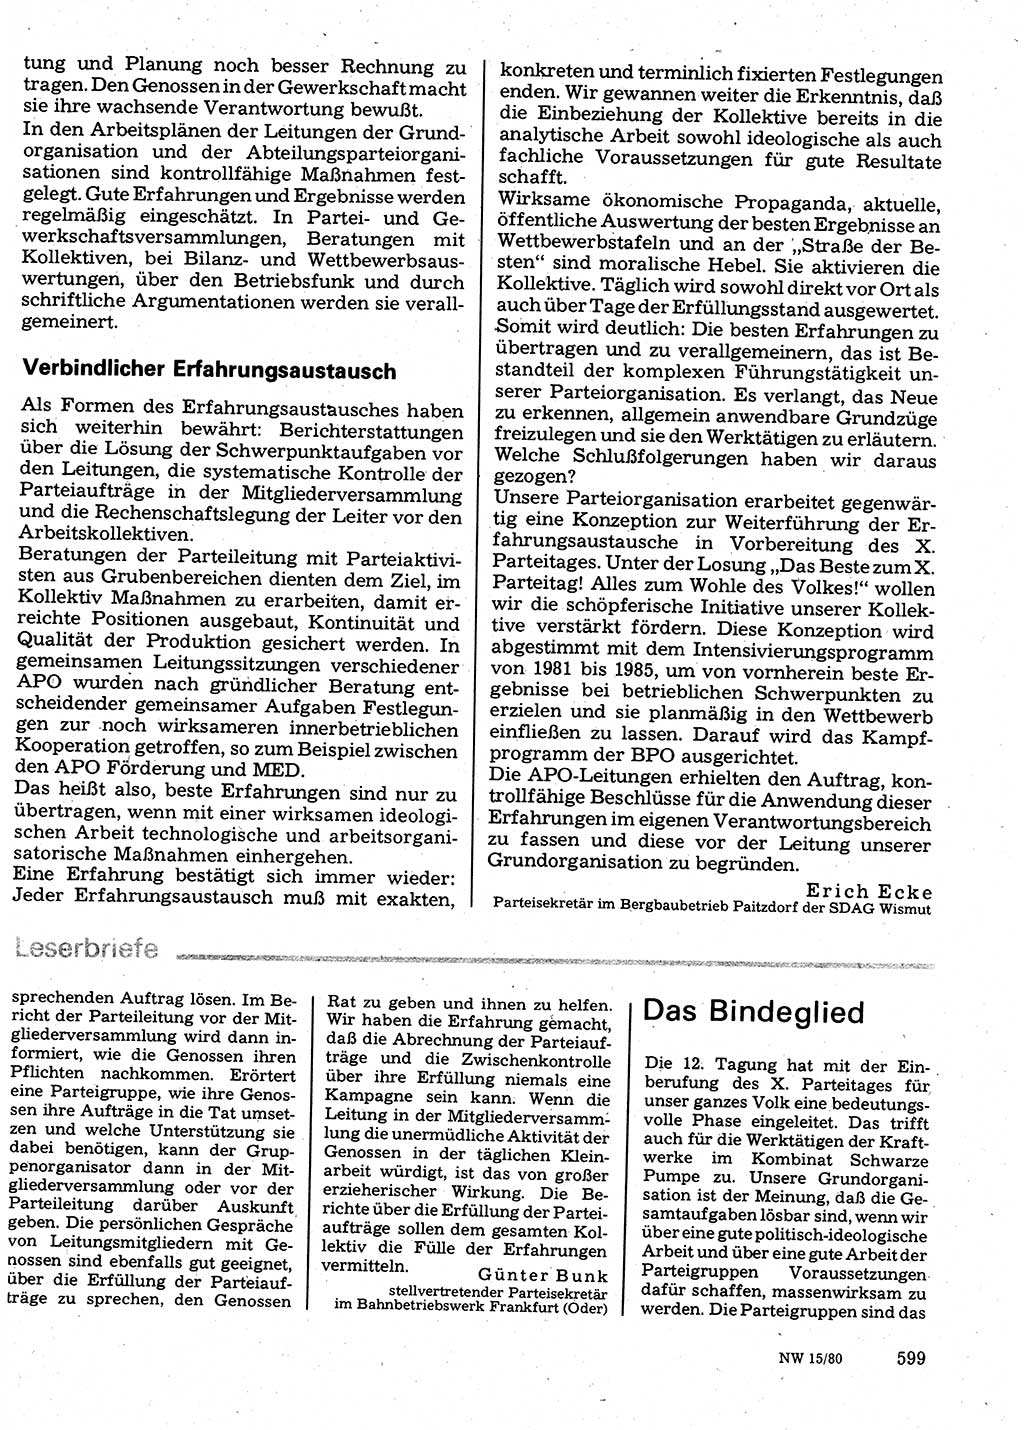 Neuer Weg (NW), Organ des Zentralkomitees (ZK) der SED (Sozialistische Einheitspartei Deutschlands) für Fragen des Parteilebens, 35. Jahrgang [Deutsche Demokratische Republik (DDR)] 1980, Seite 599 (NW ZK SED DDR 1980, S. 599)